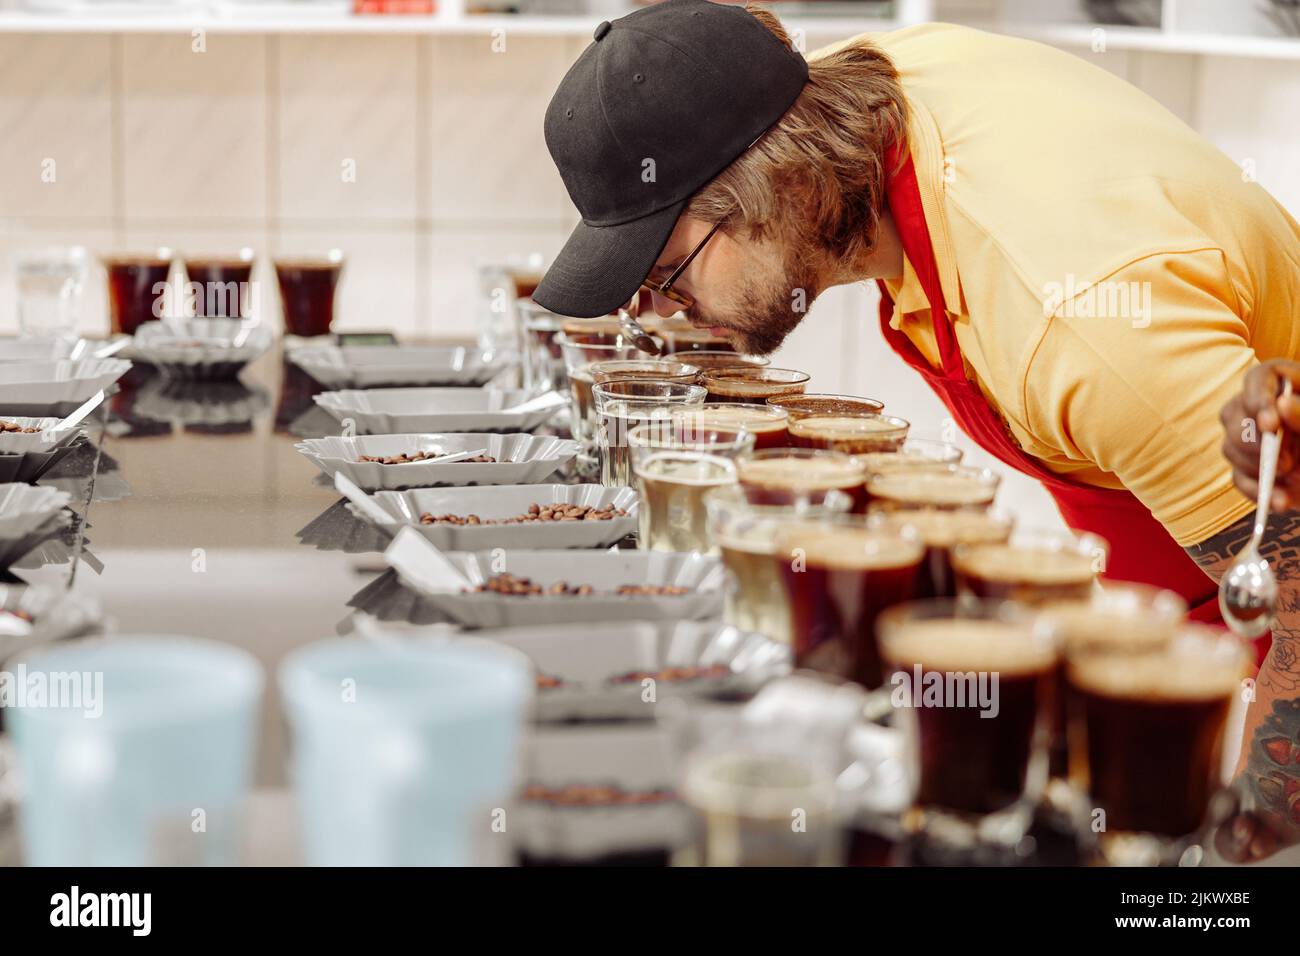 Man smelling café aromatique à une dégustation Banque D'Images